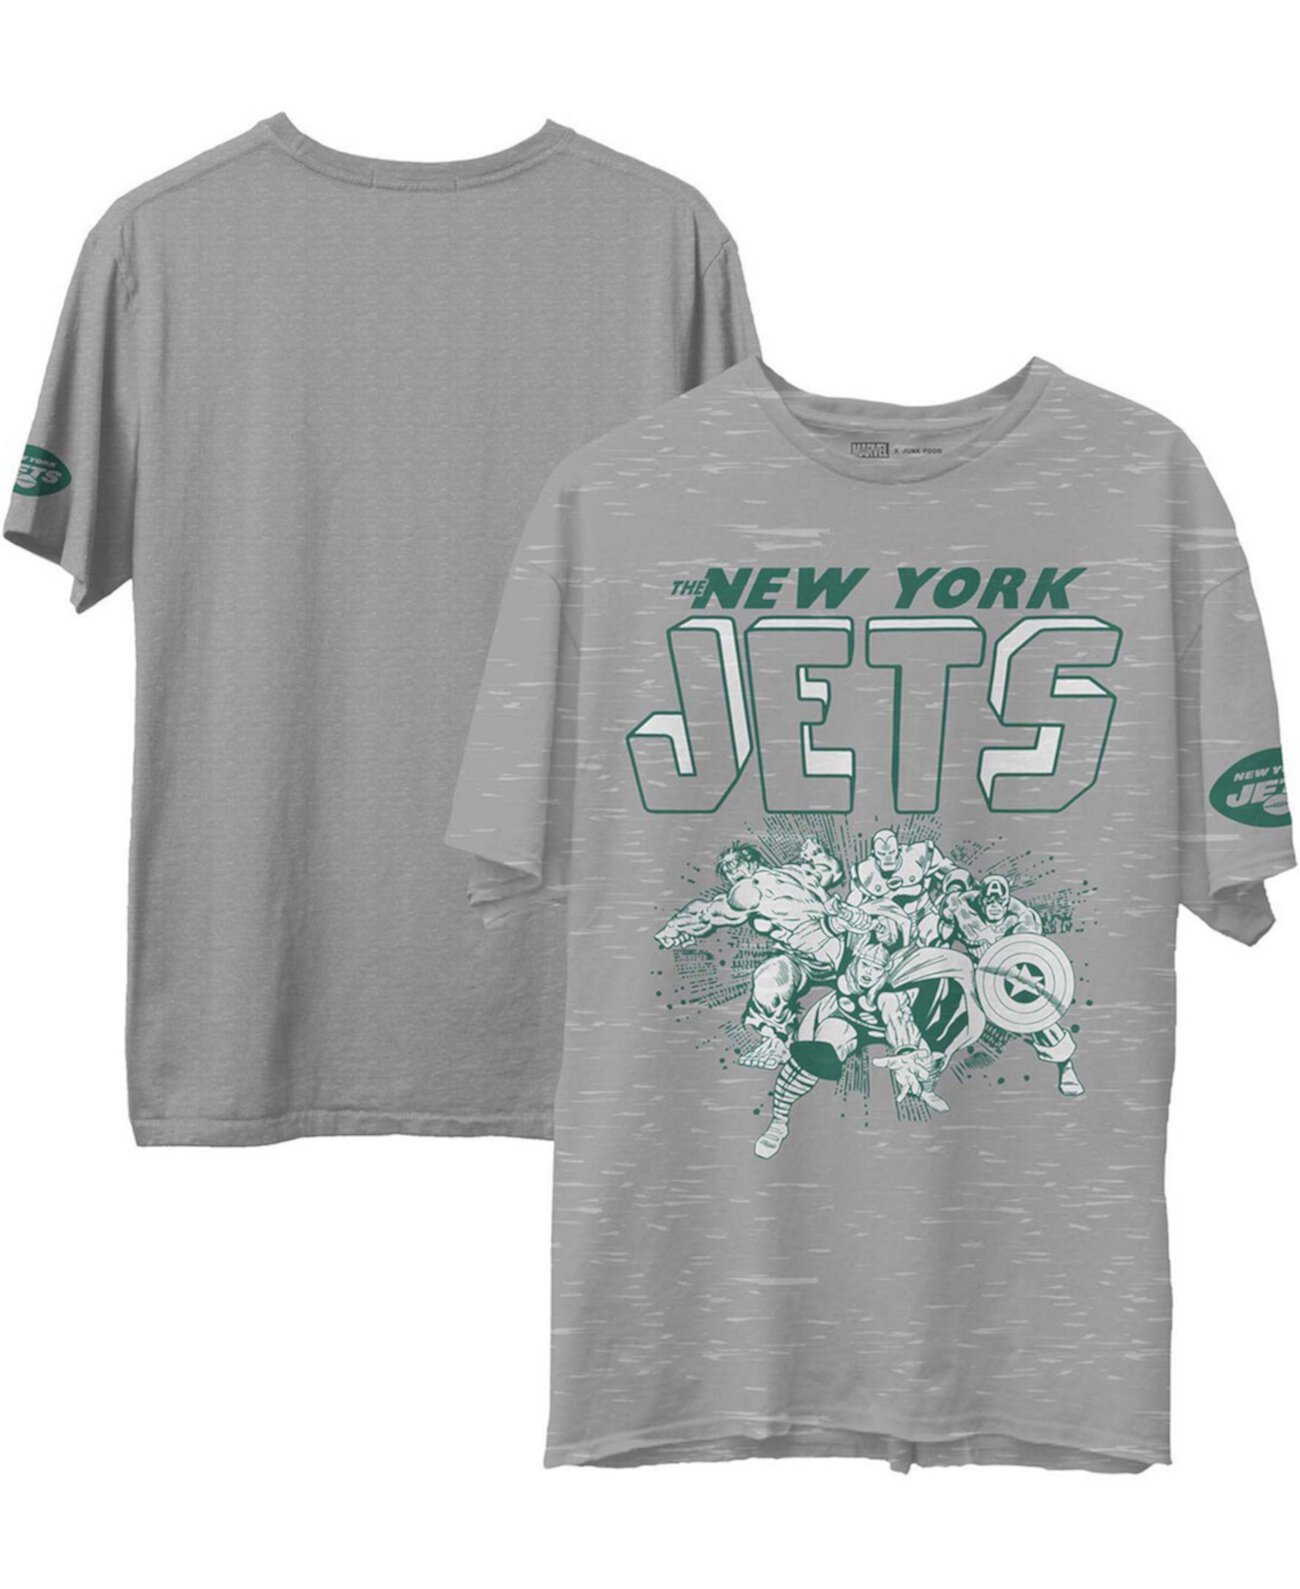 Серая мужская футболка New York Jets Marvel с эффектом посеребрения Junk Food